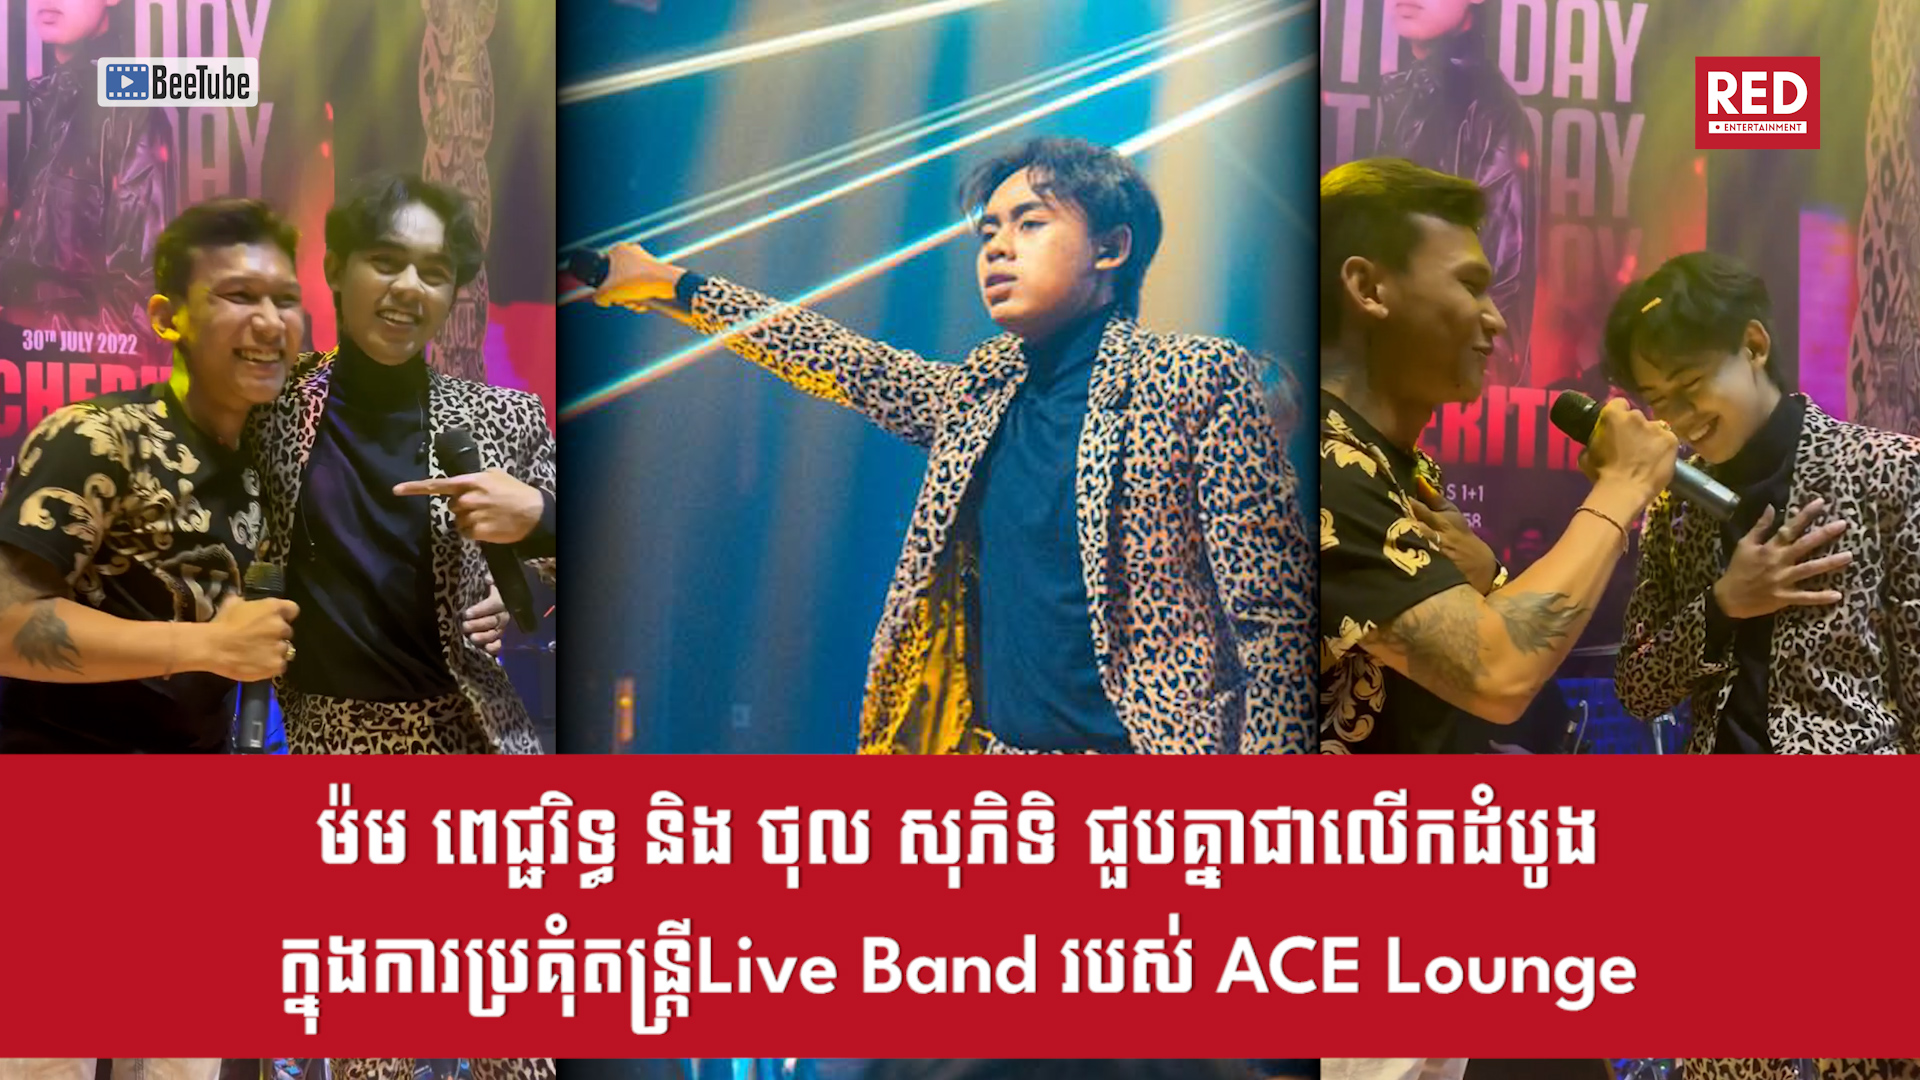 លោកម៉ម ពេជ្ជរិទ្ធ និងលោកថុល សុភិទិ ​​​ជួបគ្នាជាលើកដំបូងនៅក្នុងការប្រគុំតន្រ្តី Live Band របស់ ACE Lounge